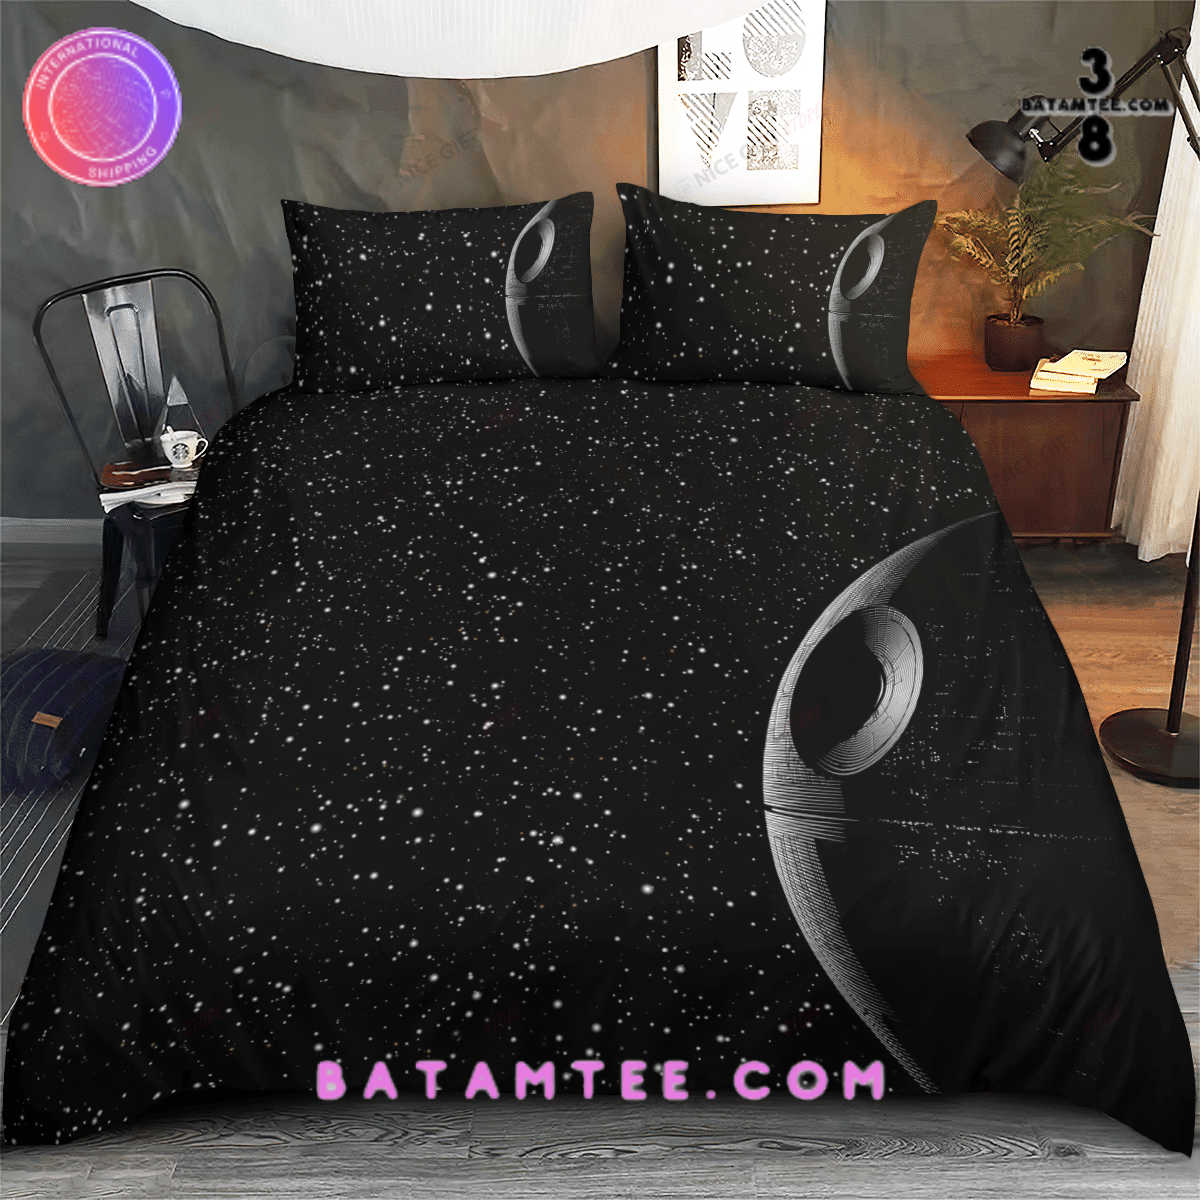 Star Wars Dark Night Bedding Set - Batamtee Shop - Threads & Totes ...